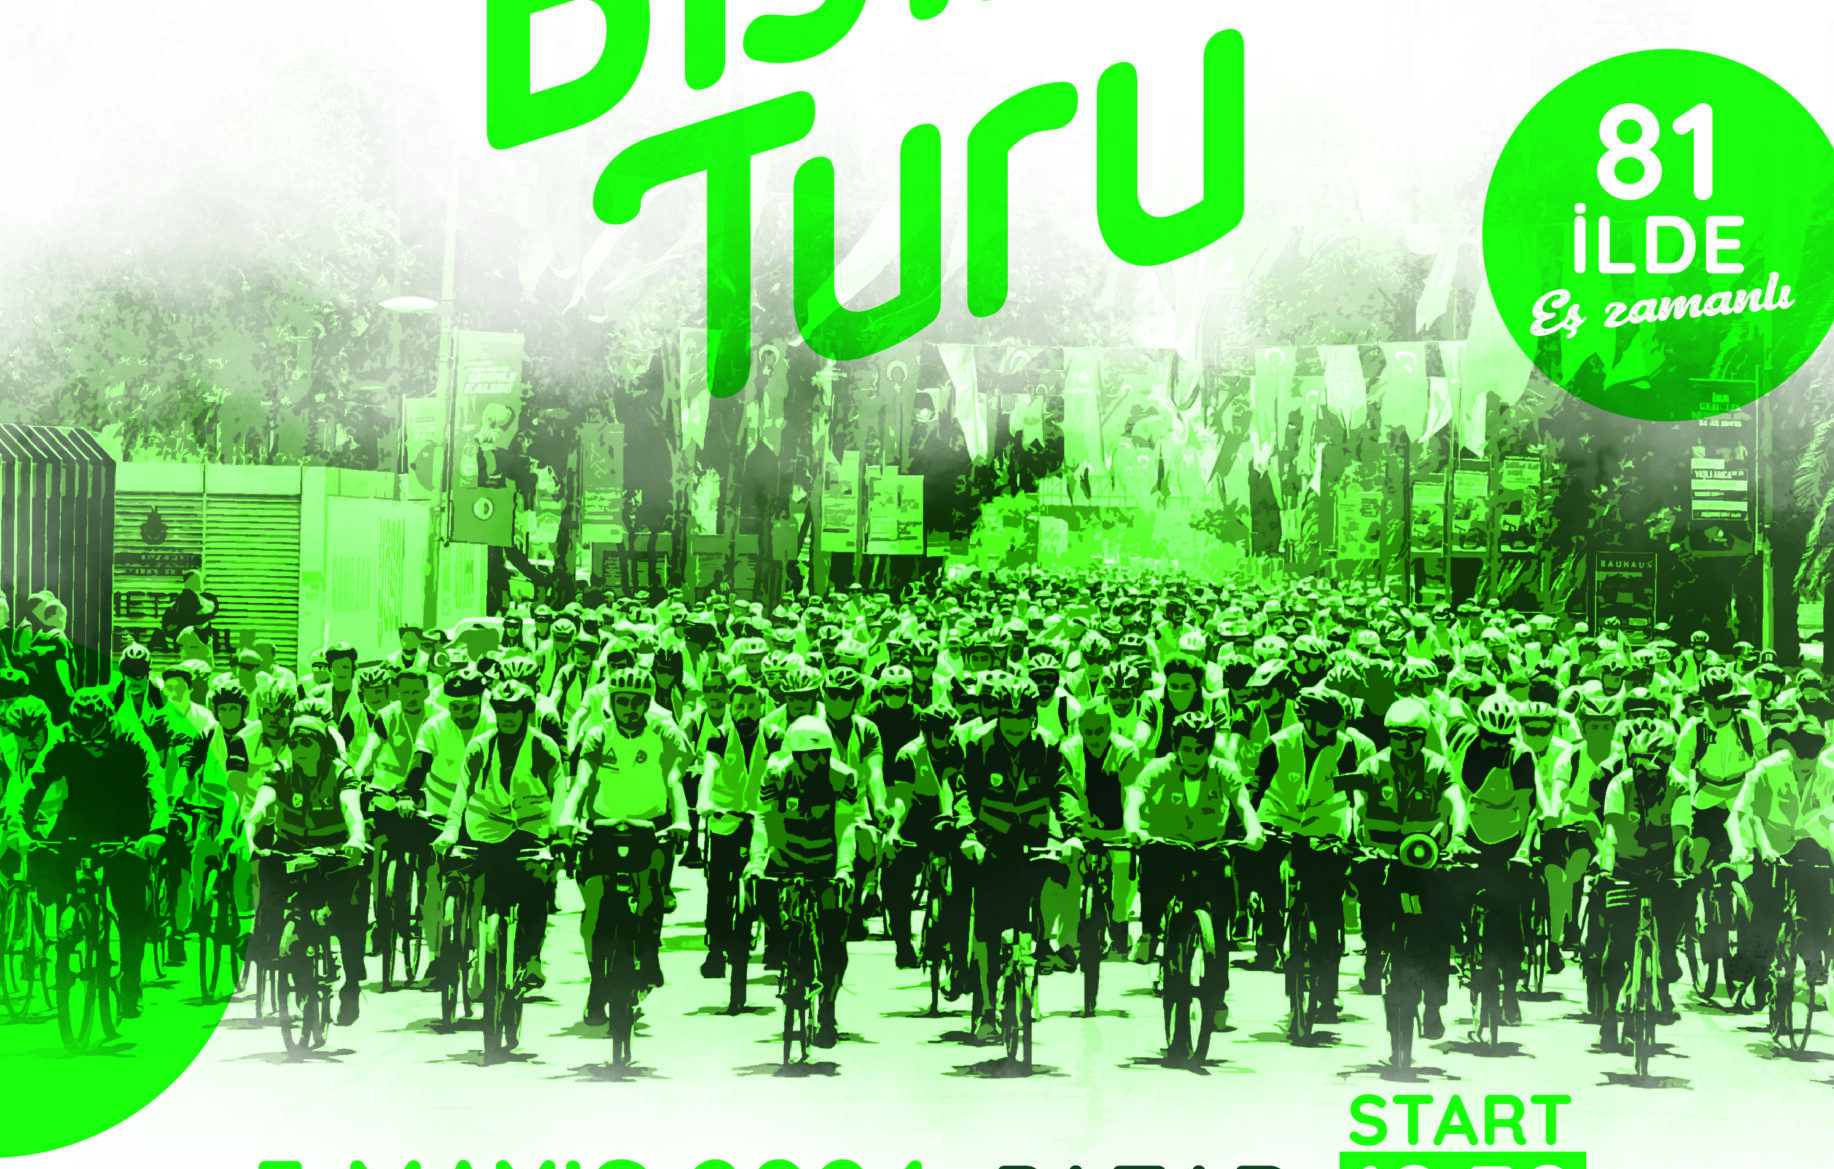 11. Yeşilay Bisiklet Turu 5 Mayıs Pazar günü düzenleniyor